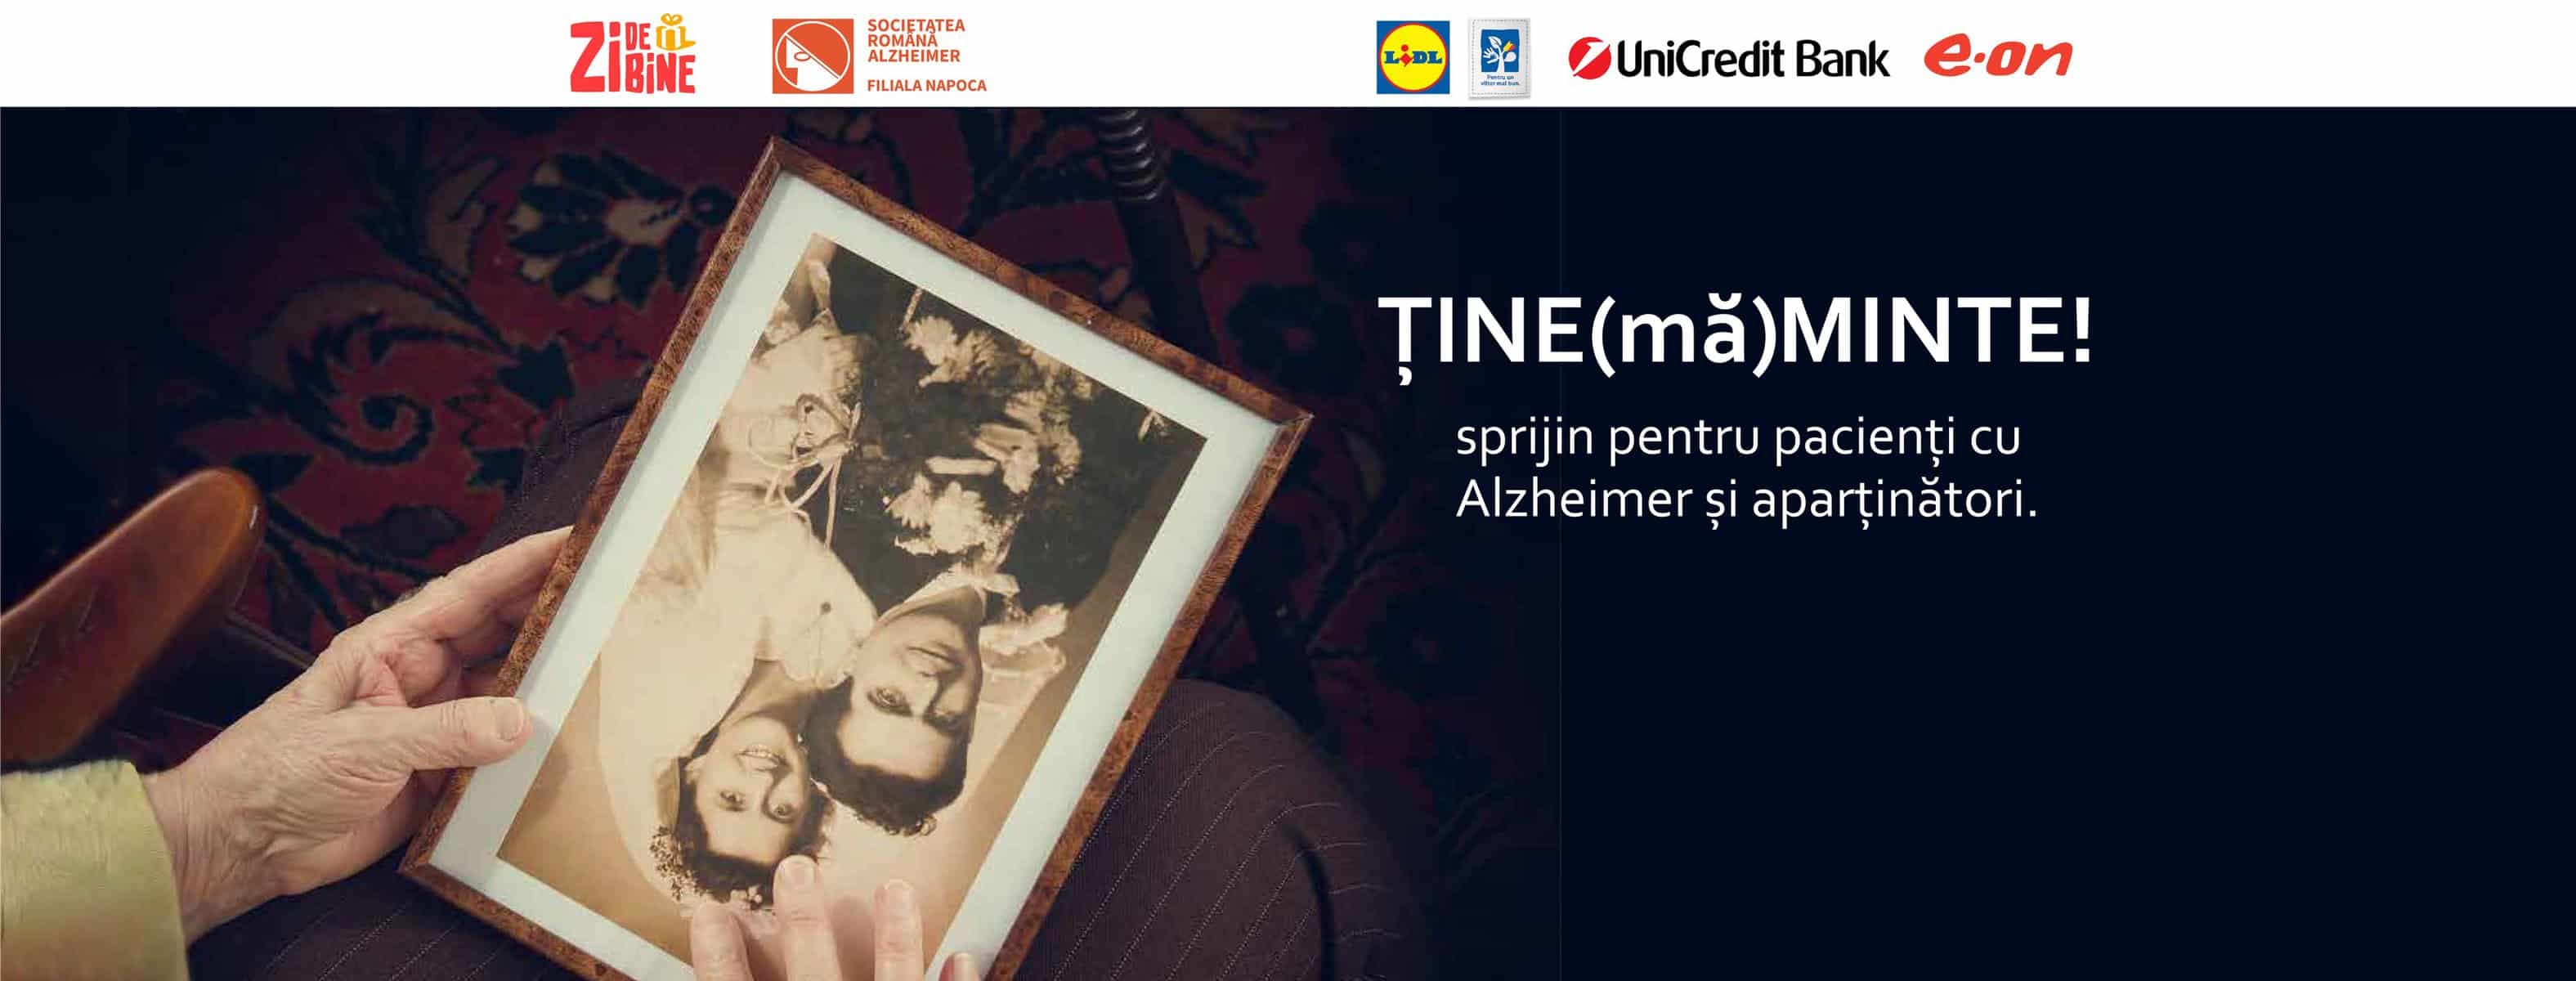 May be an image of 3 people and text that says "ZIBE FILIALANAPOCA UniCredit Bank e.on ȚINE (mă) MINTE! sprijin pentru pacienți CU Alzheimer și aparținători."